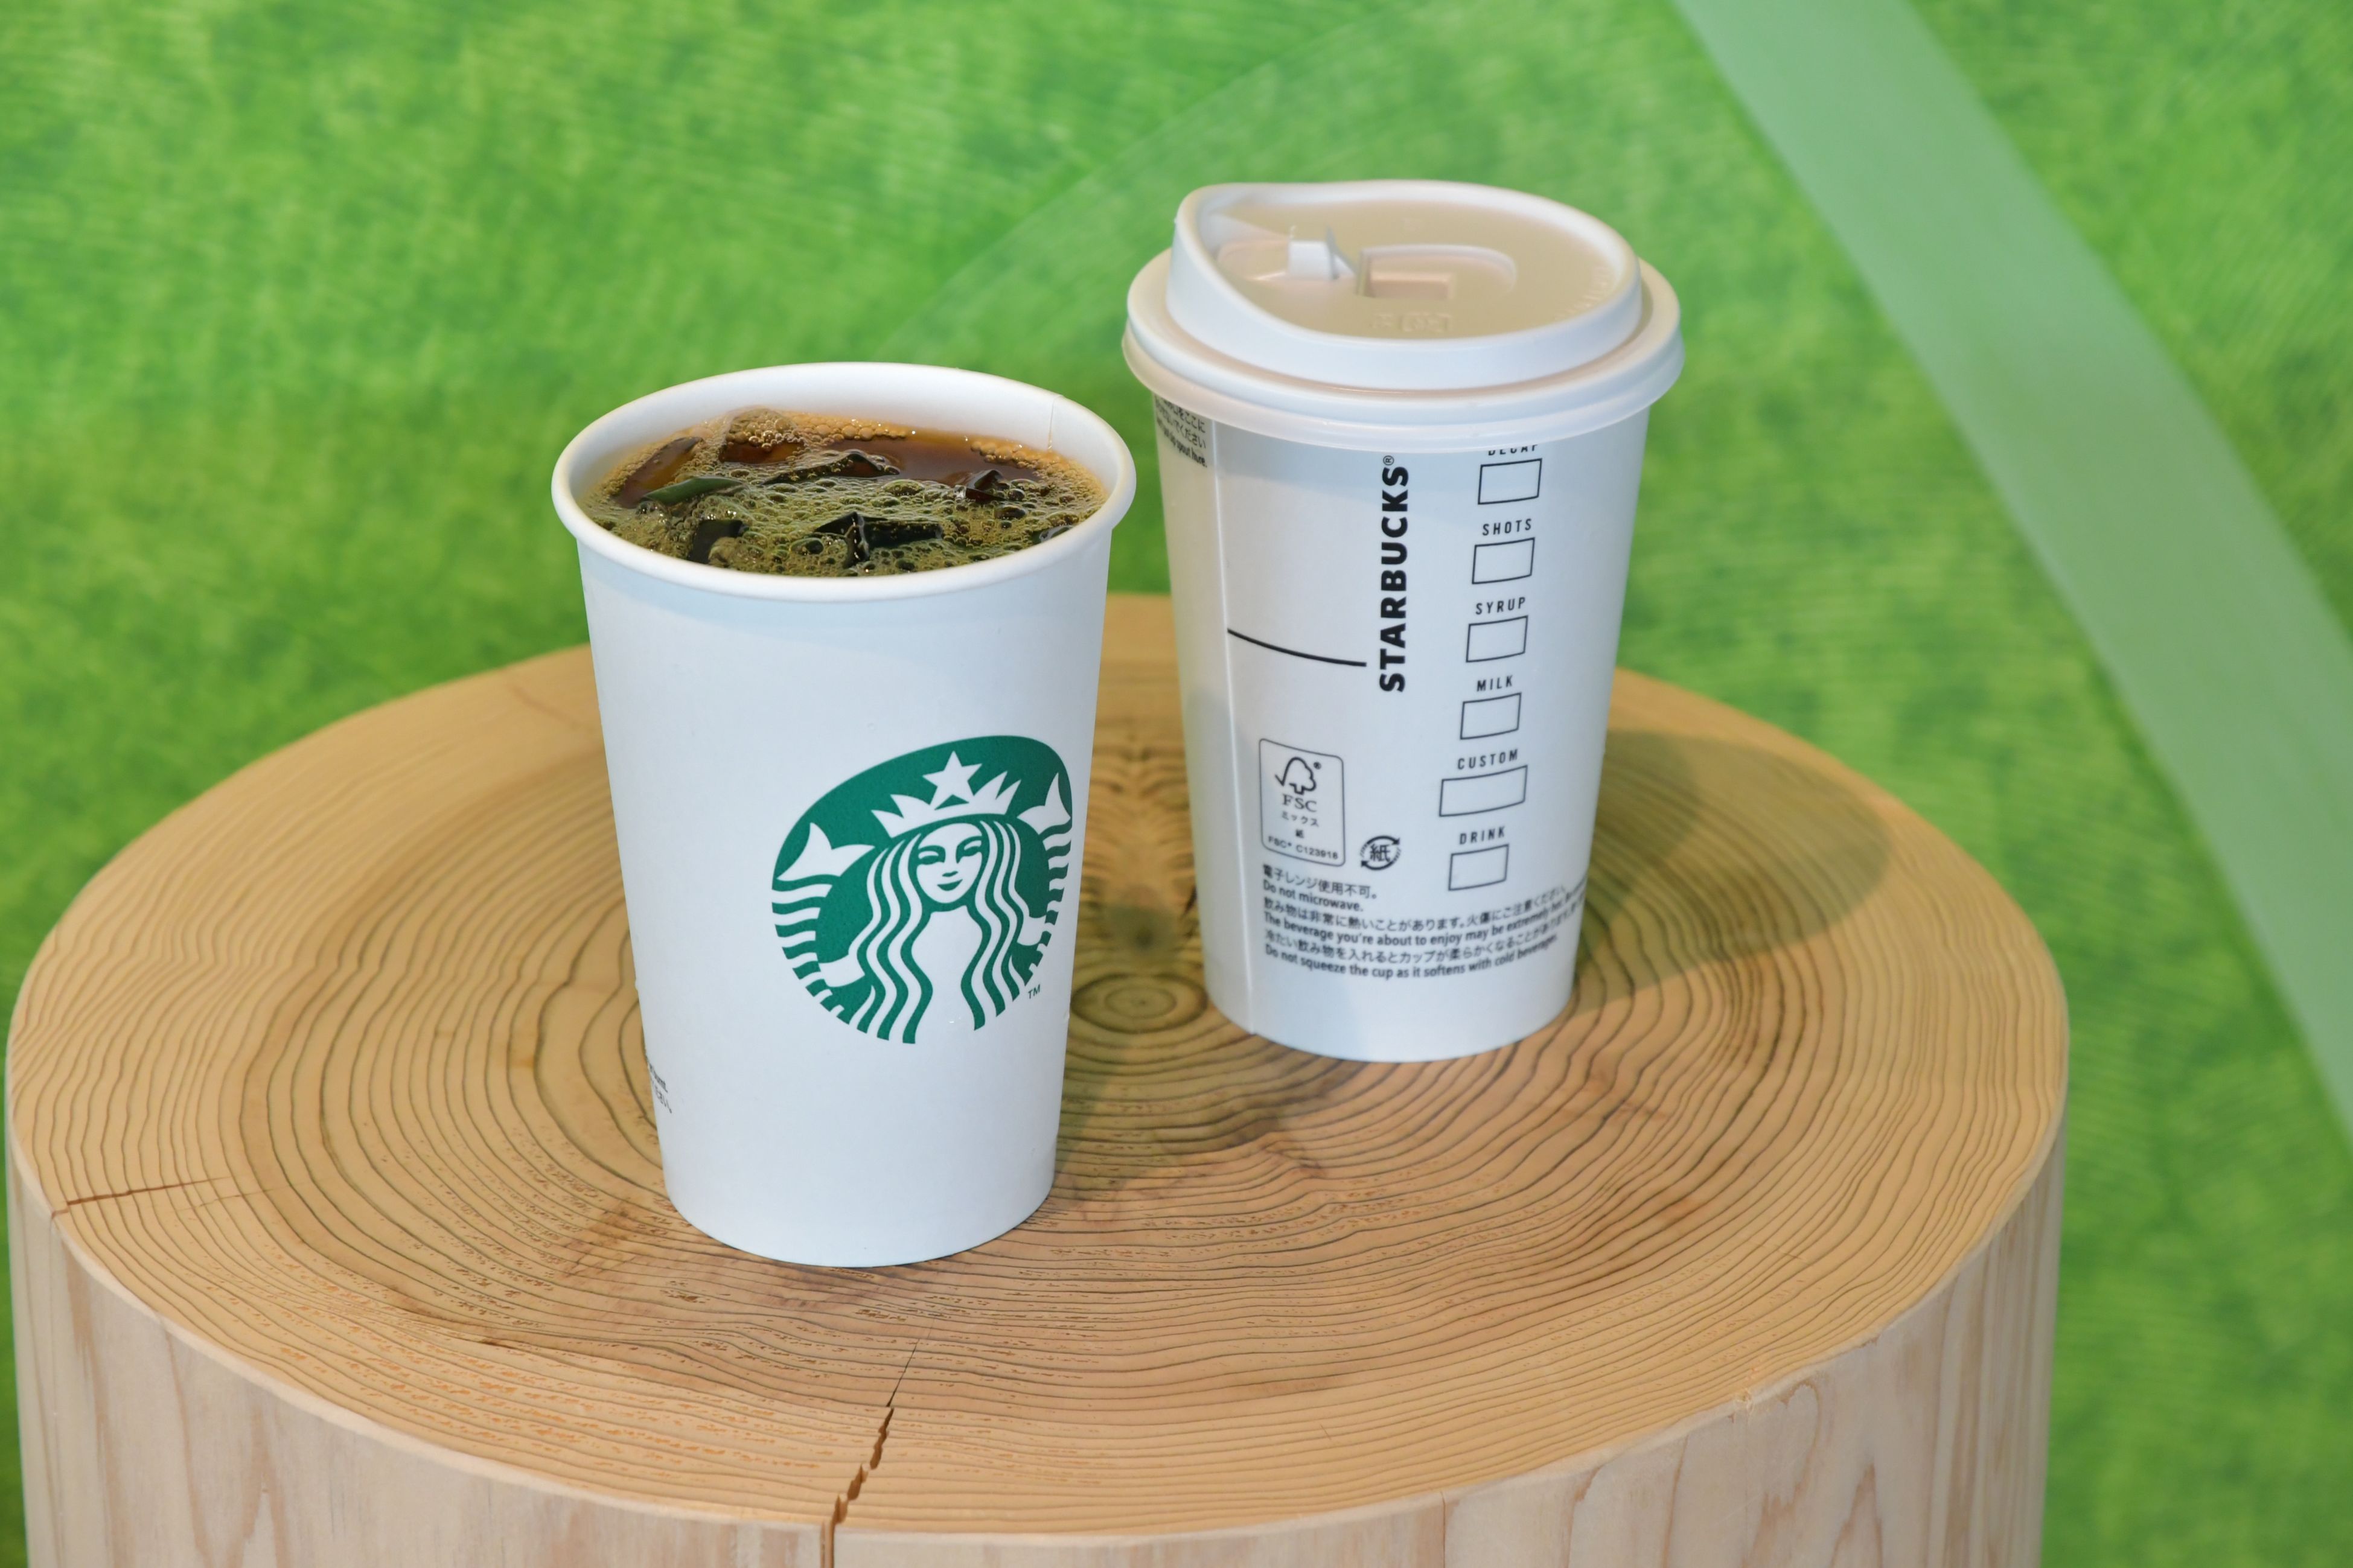 Fsc 認証紙カップとストロー不要の新リッド採用で プラスチック削減に大きく貢献 スターバックス国内103店舗で年11月より 一部アイスビバレッジに導入開始 翌年2月に全店舗に拡大を予定 スターバックス コーヒー ジャパン